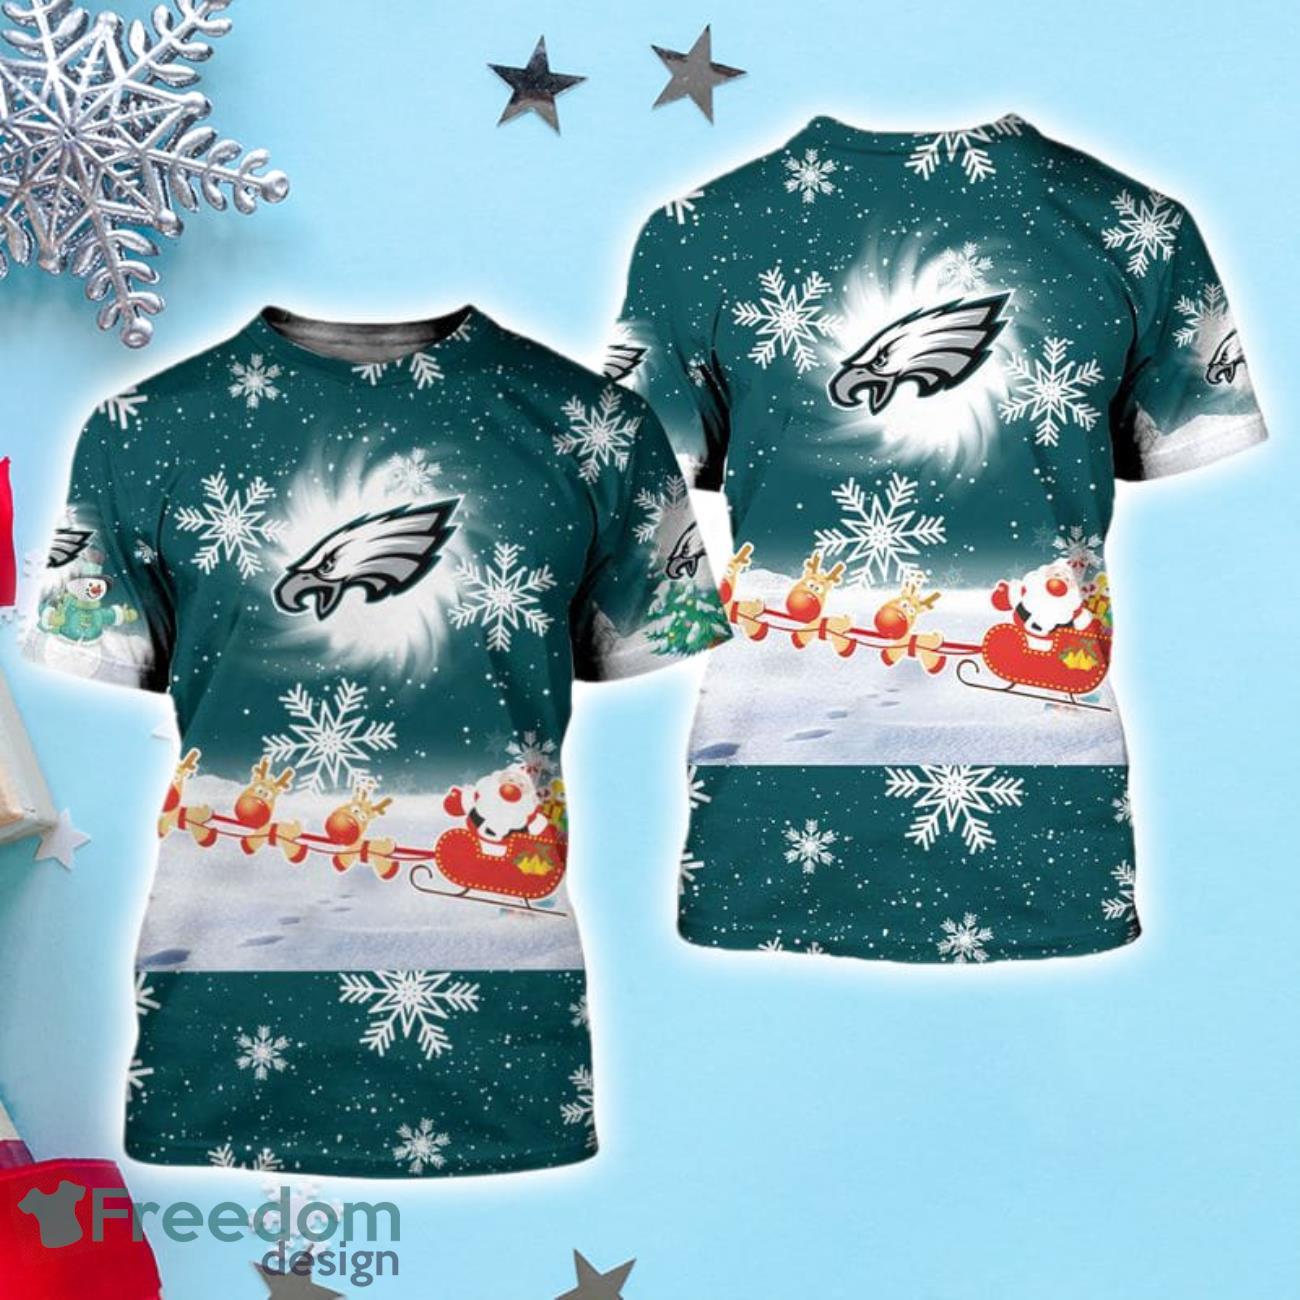 Best Mom Ever Philadelphia Eagles Shirt - Freedomdesign